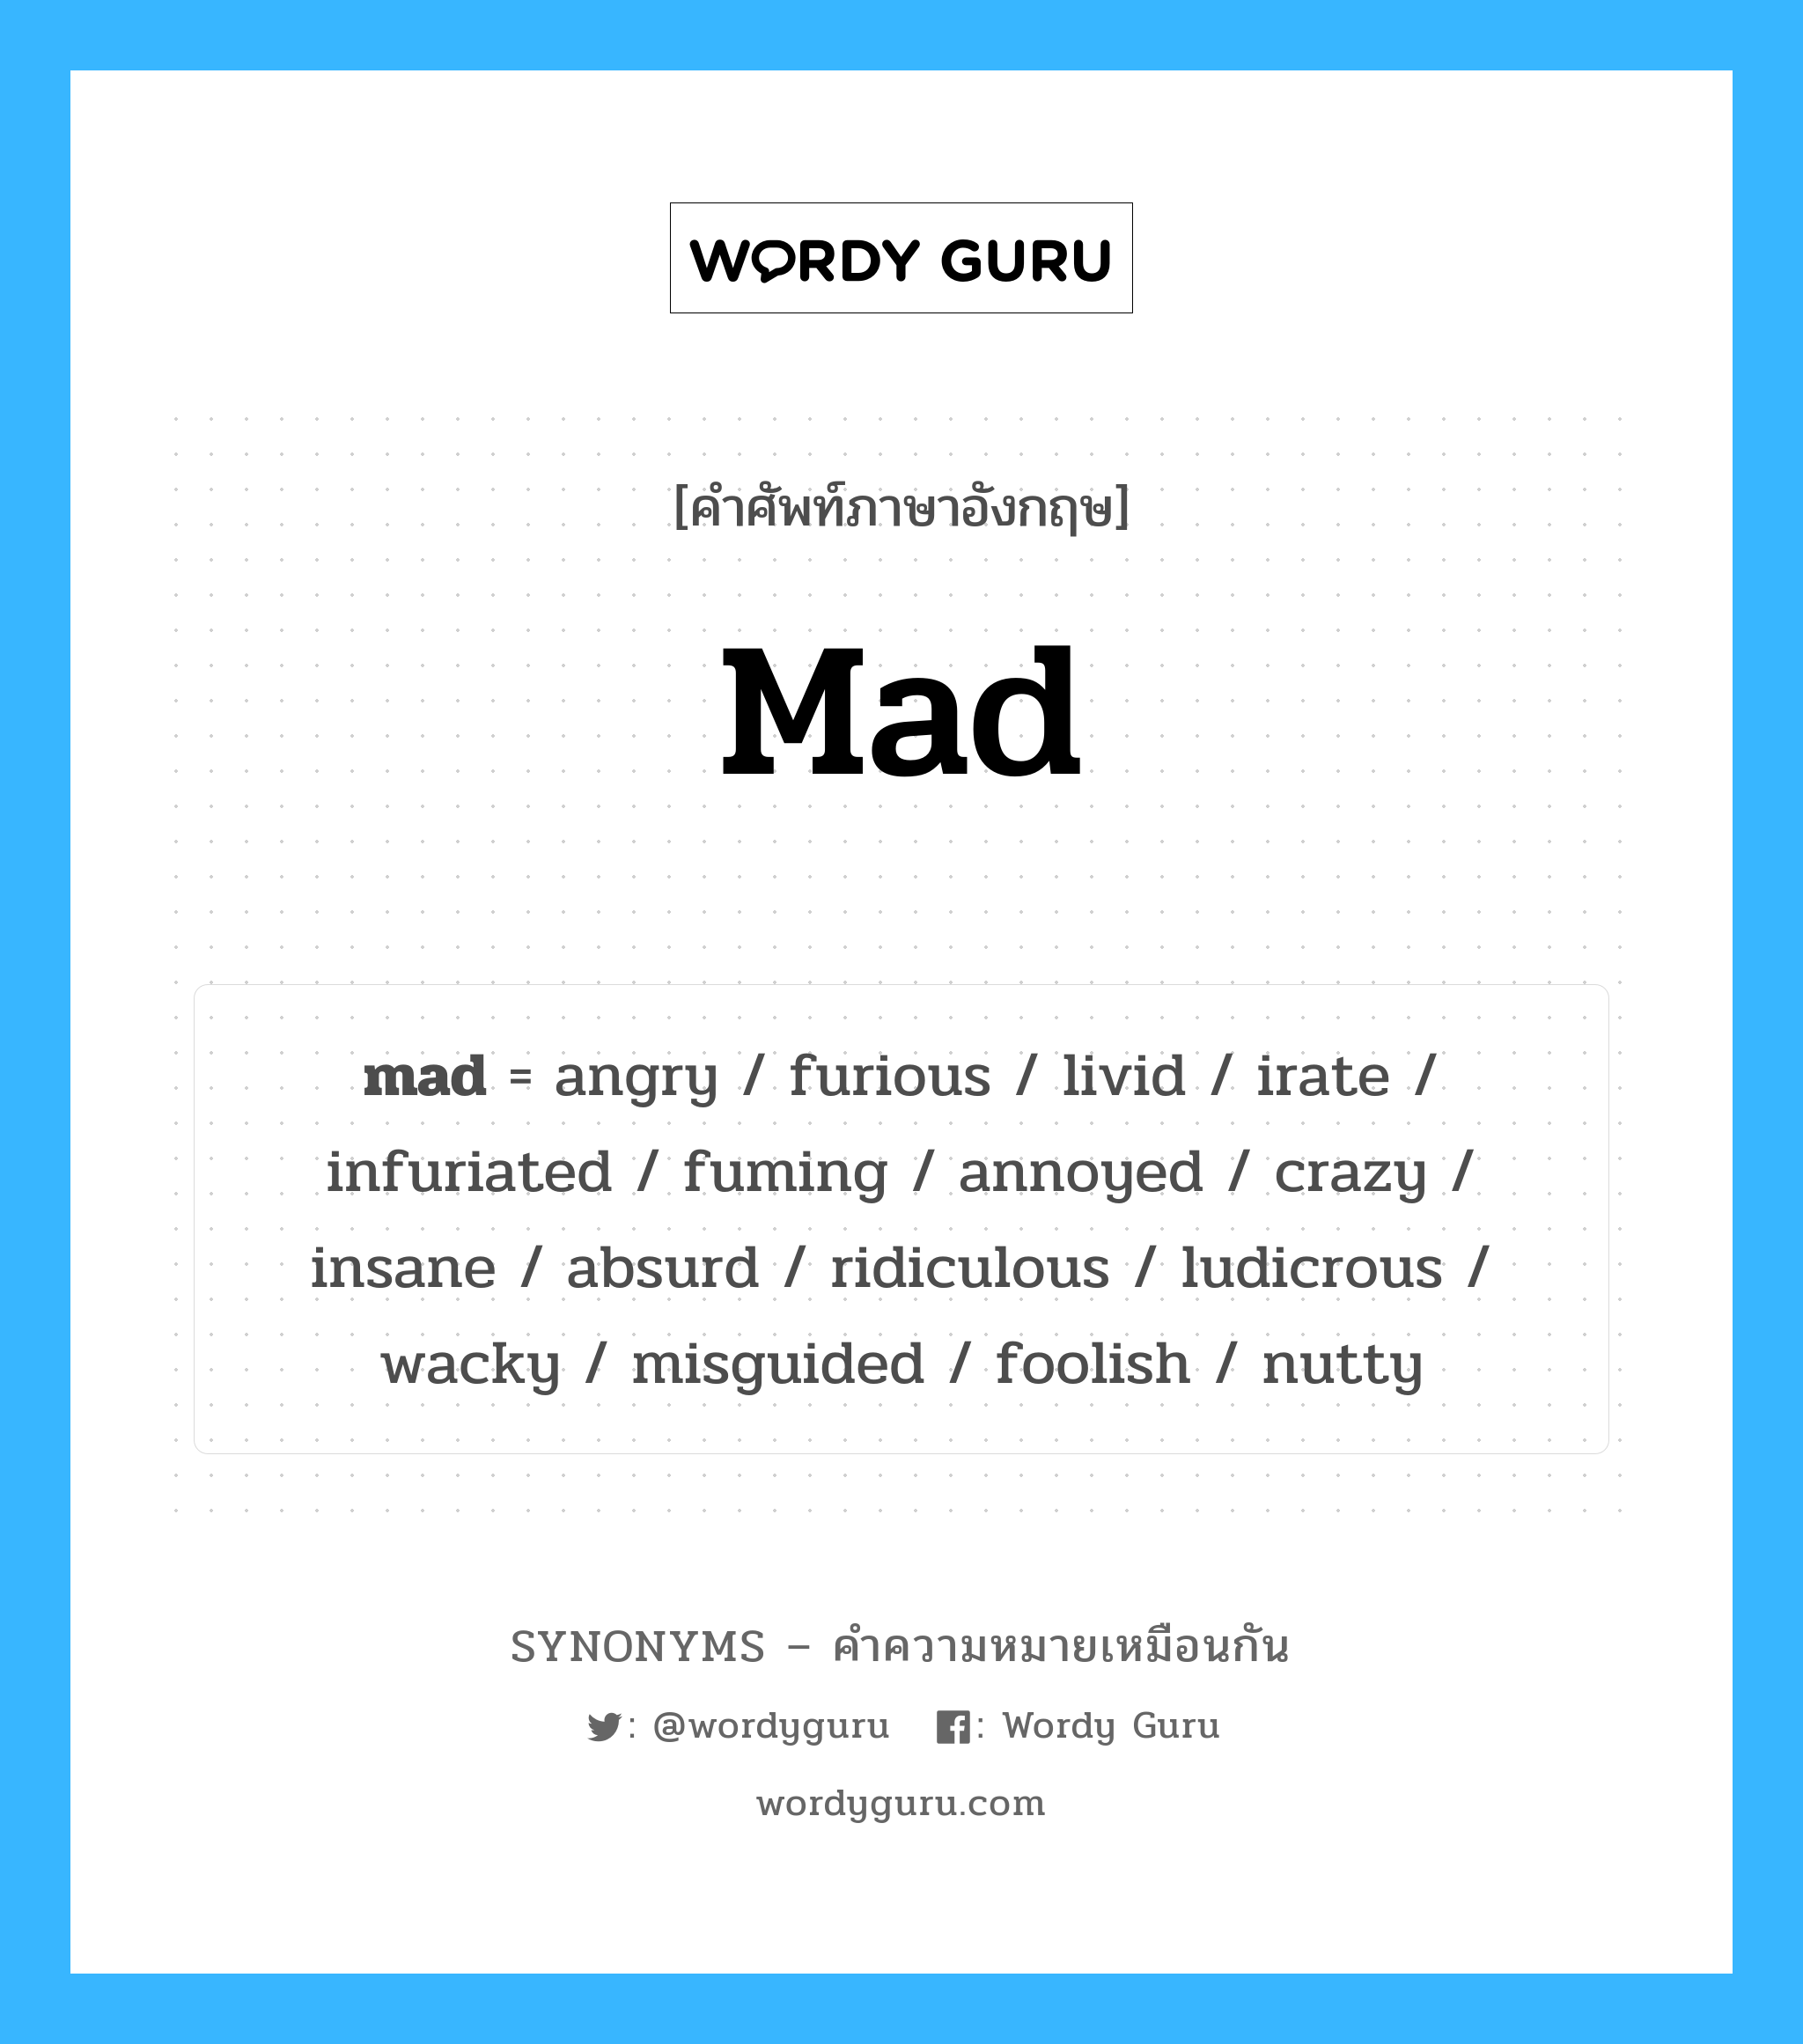 ludicrous เป็นหนึ่งใน mad และมีคำอื่น ๆ อีกดังนี้, คำศัพท์ภาษาอังกฤษ ludicrous ความหมายคล้ายกันกับ mad แปลว่า เย้ยหยัน หมวด mad